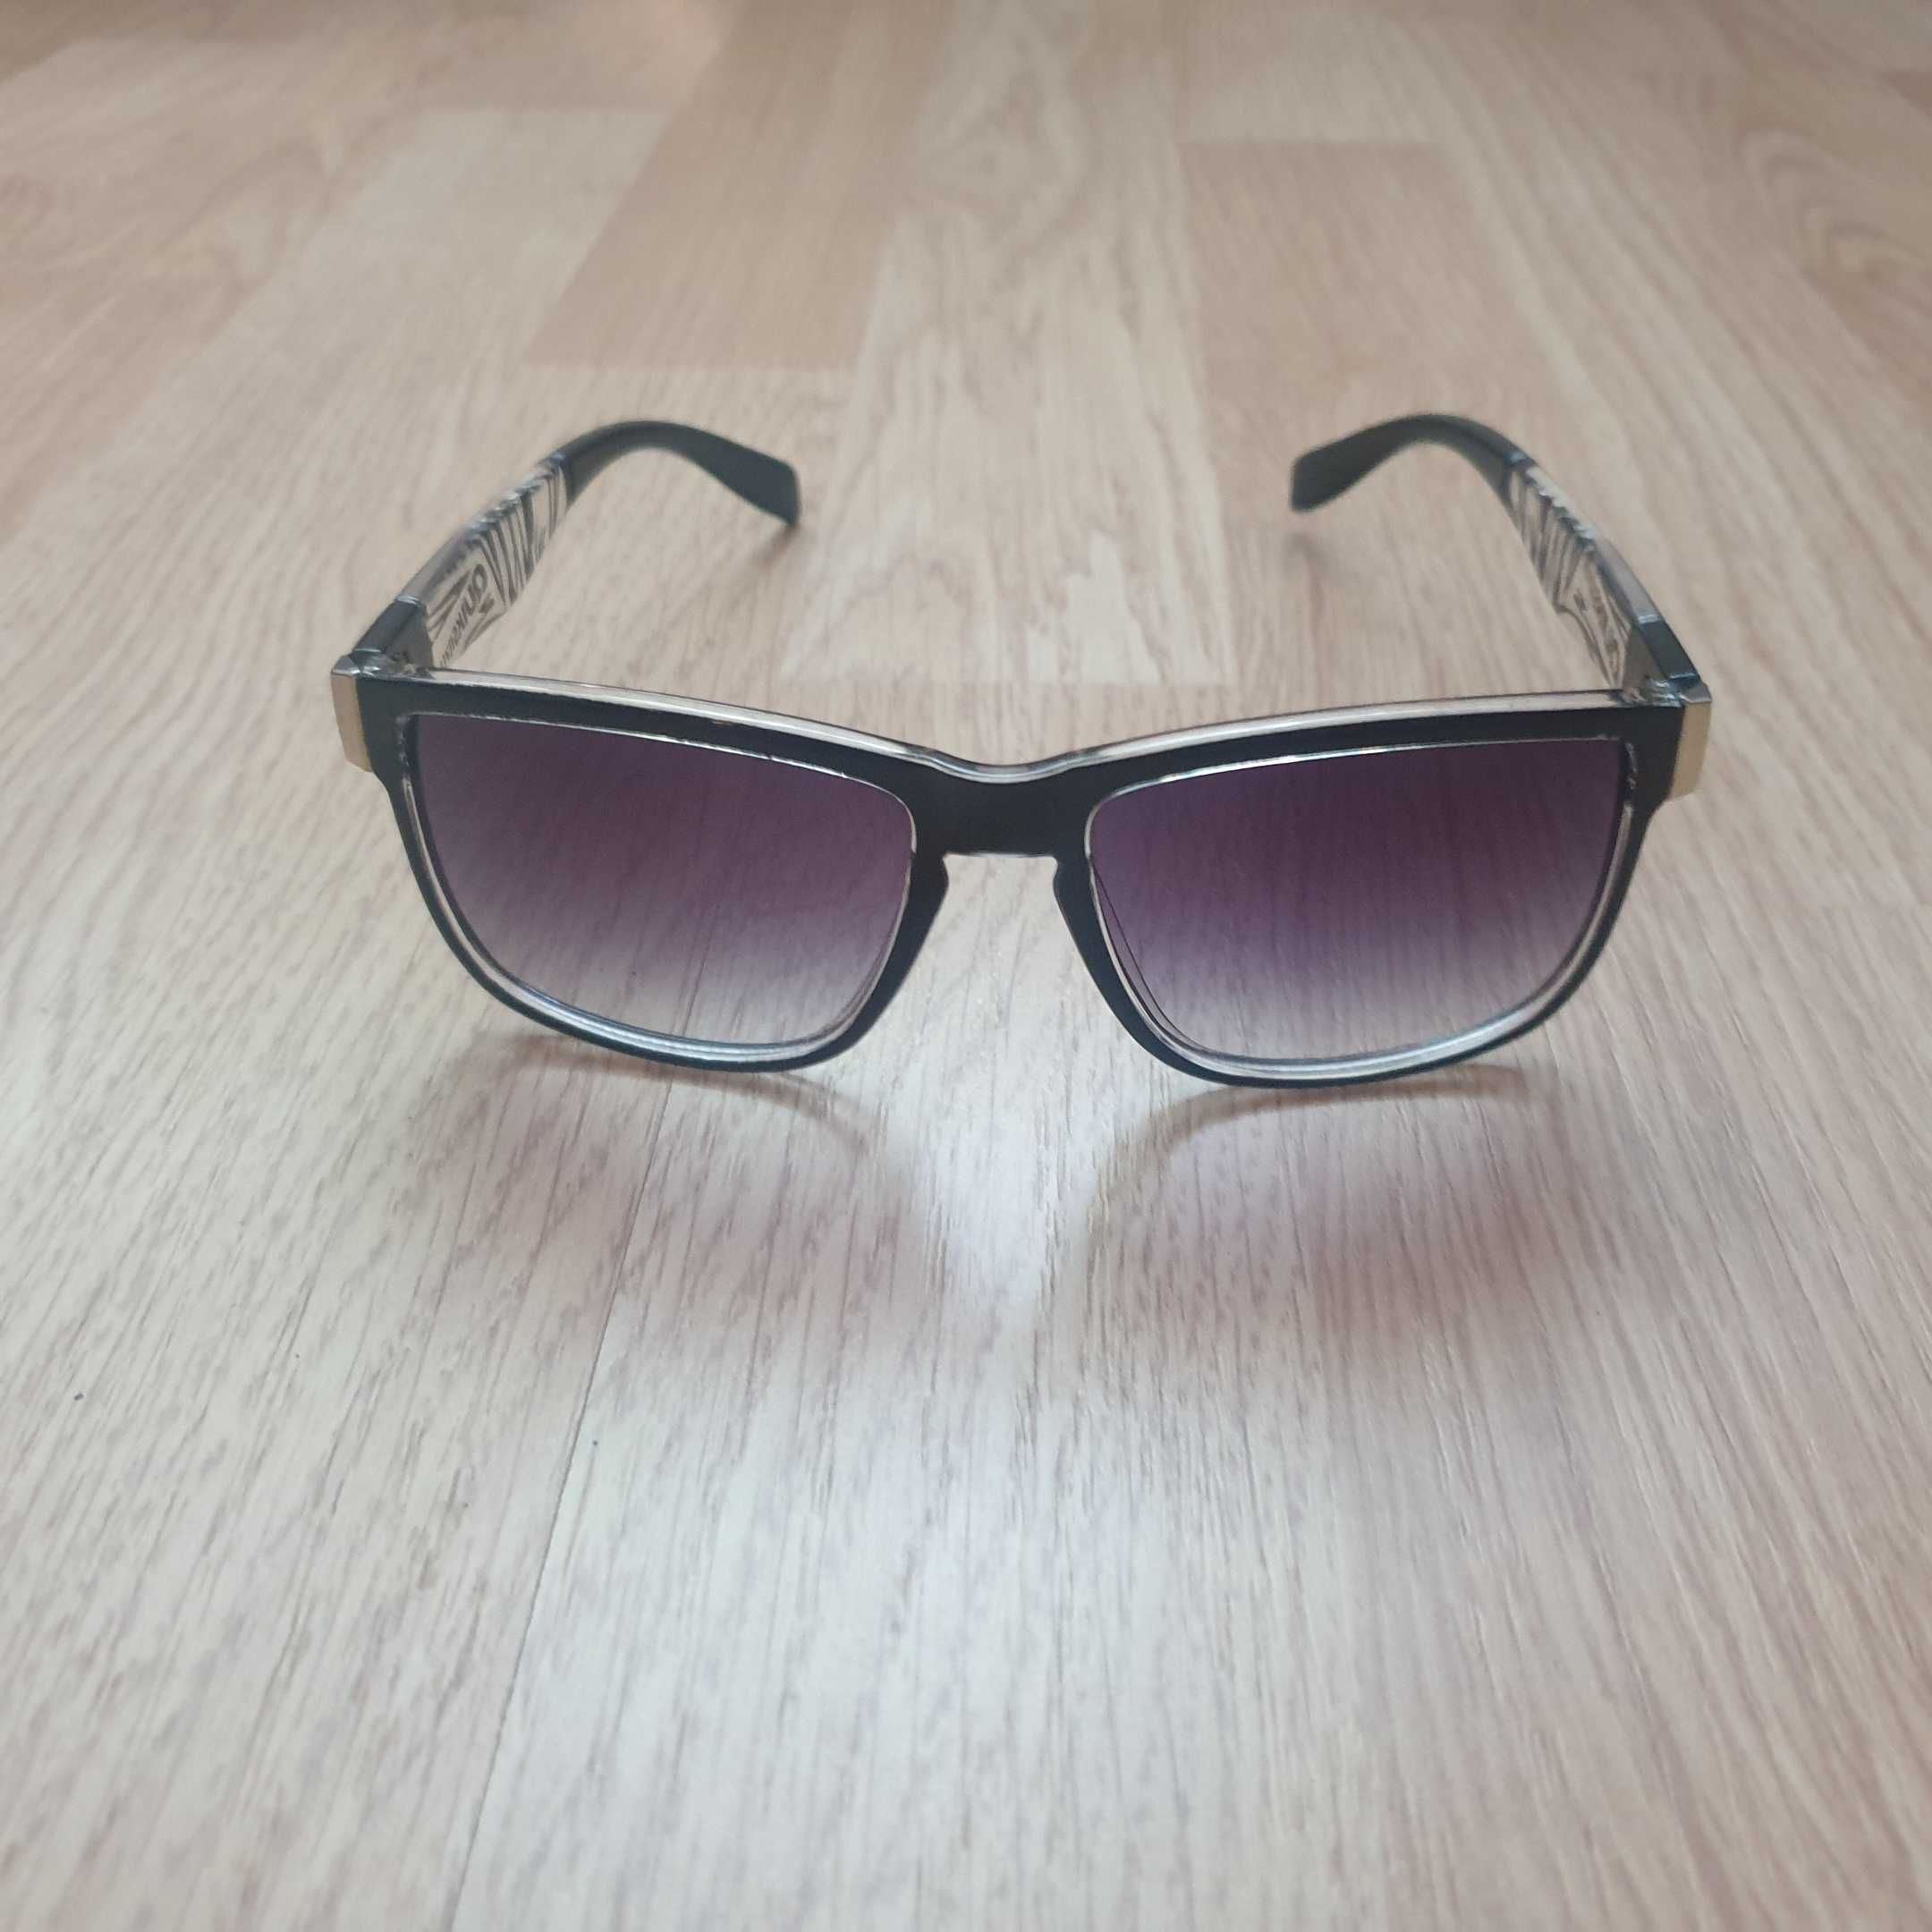 Quiksilver okulary przeciwsłoneczne damskie